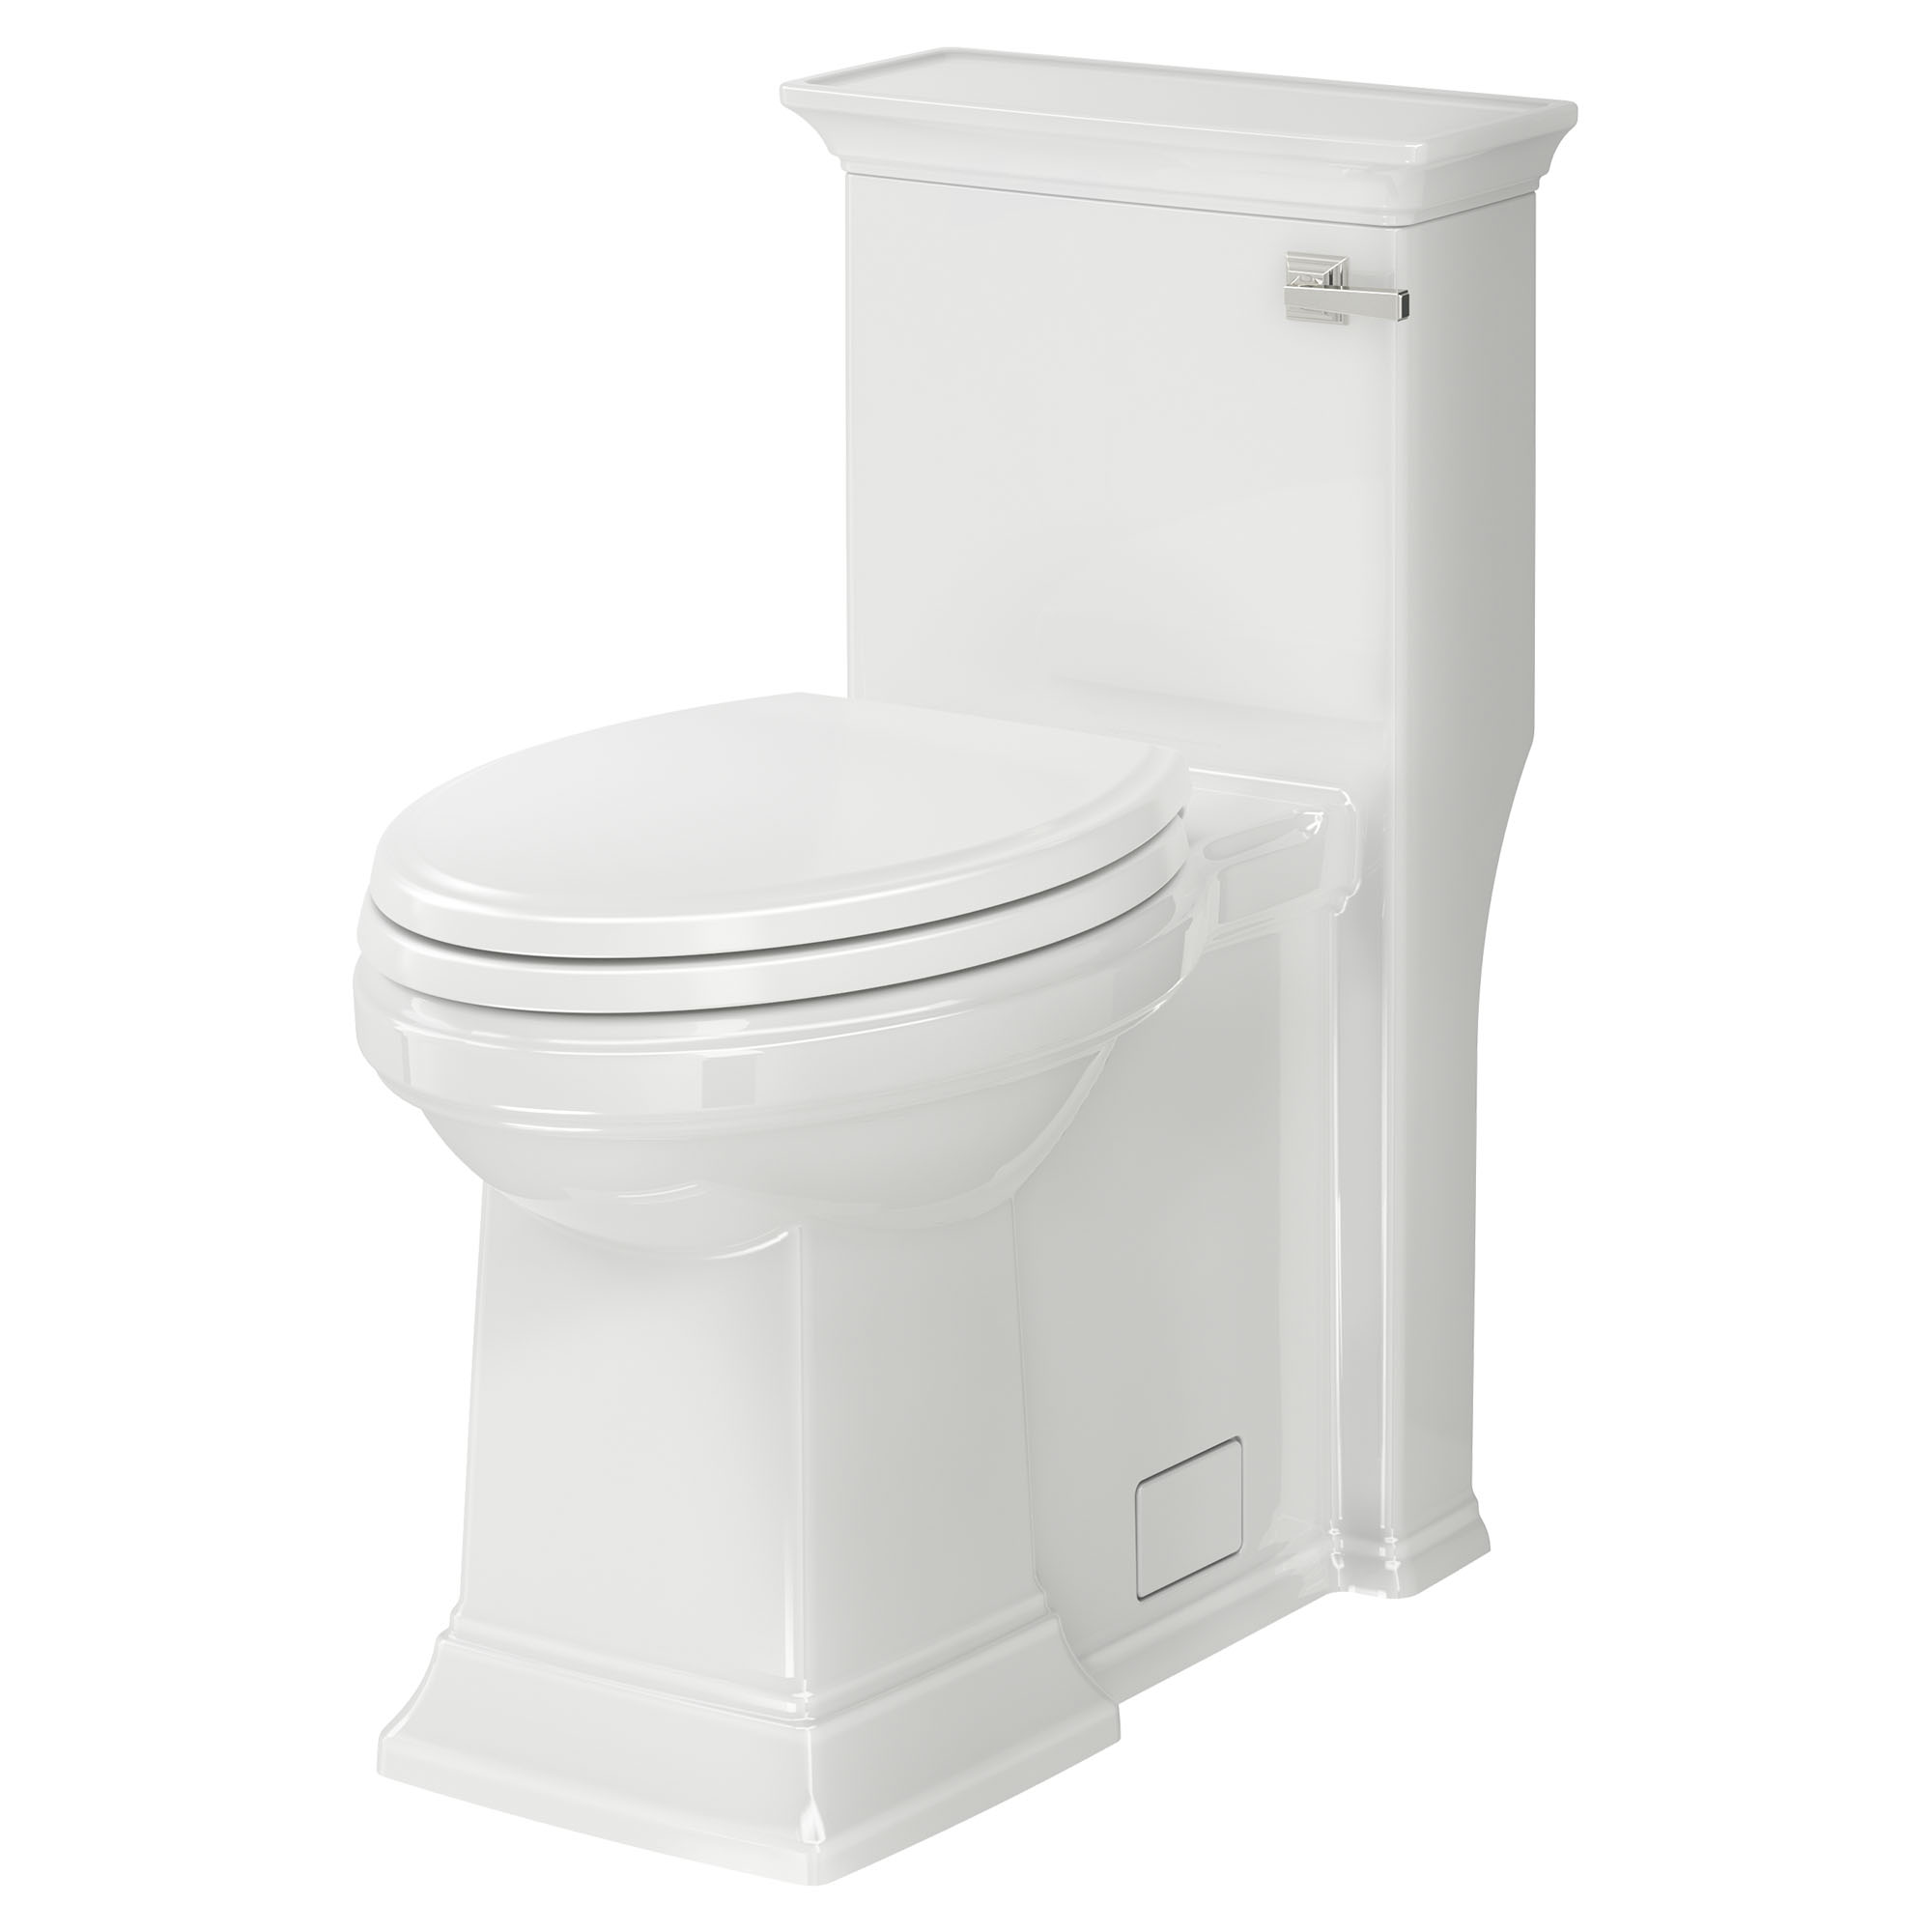 Toilette monopièce Town Square S, 1,28 gpc/4,8 lpc, à cuvette allongée à hauteur de chaise, levier de déclenchement à droite, avec siège